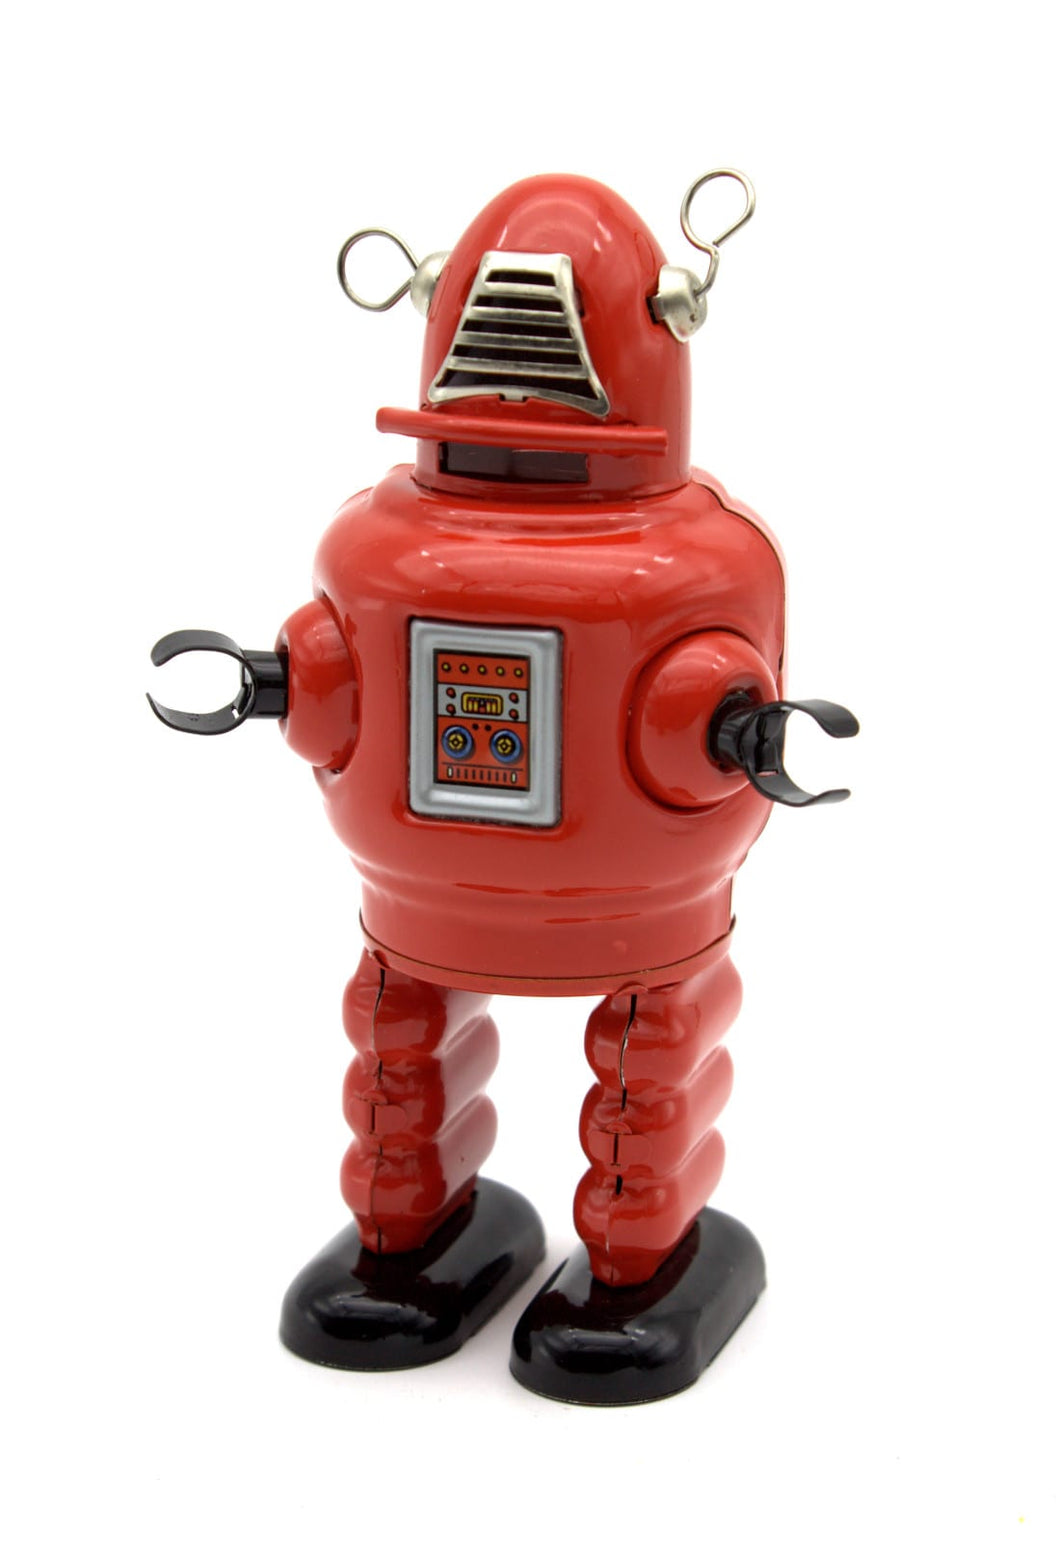 Tin Toy - Small Planet Robot